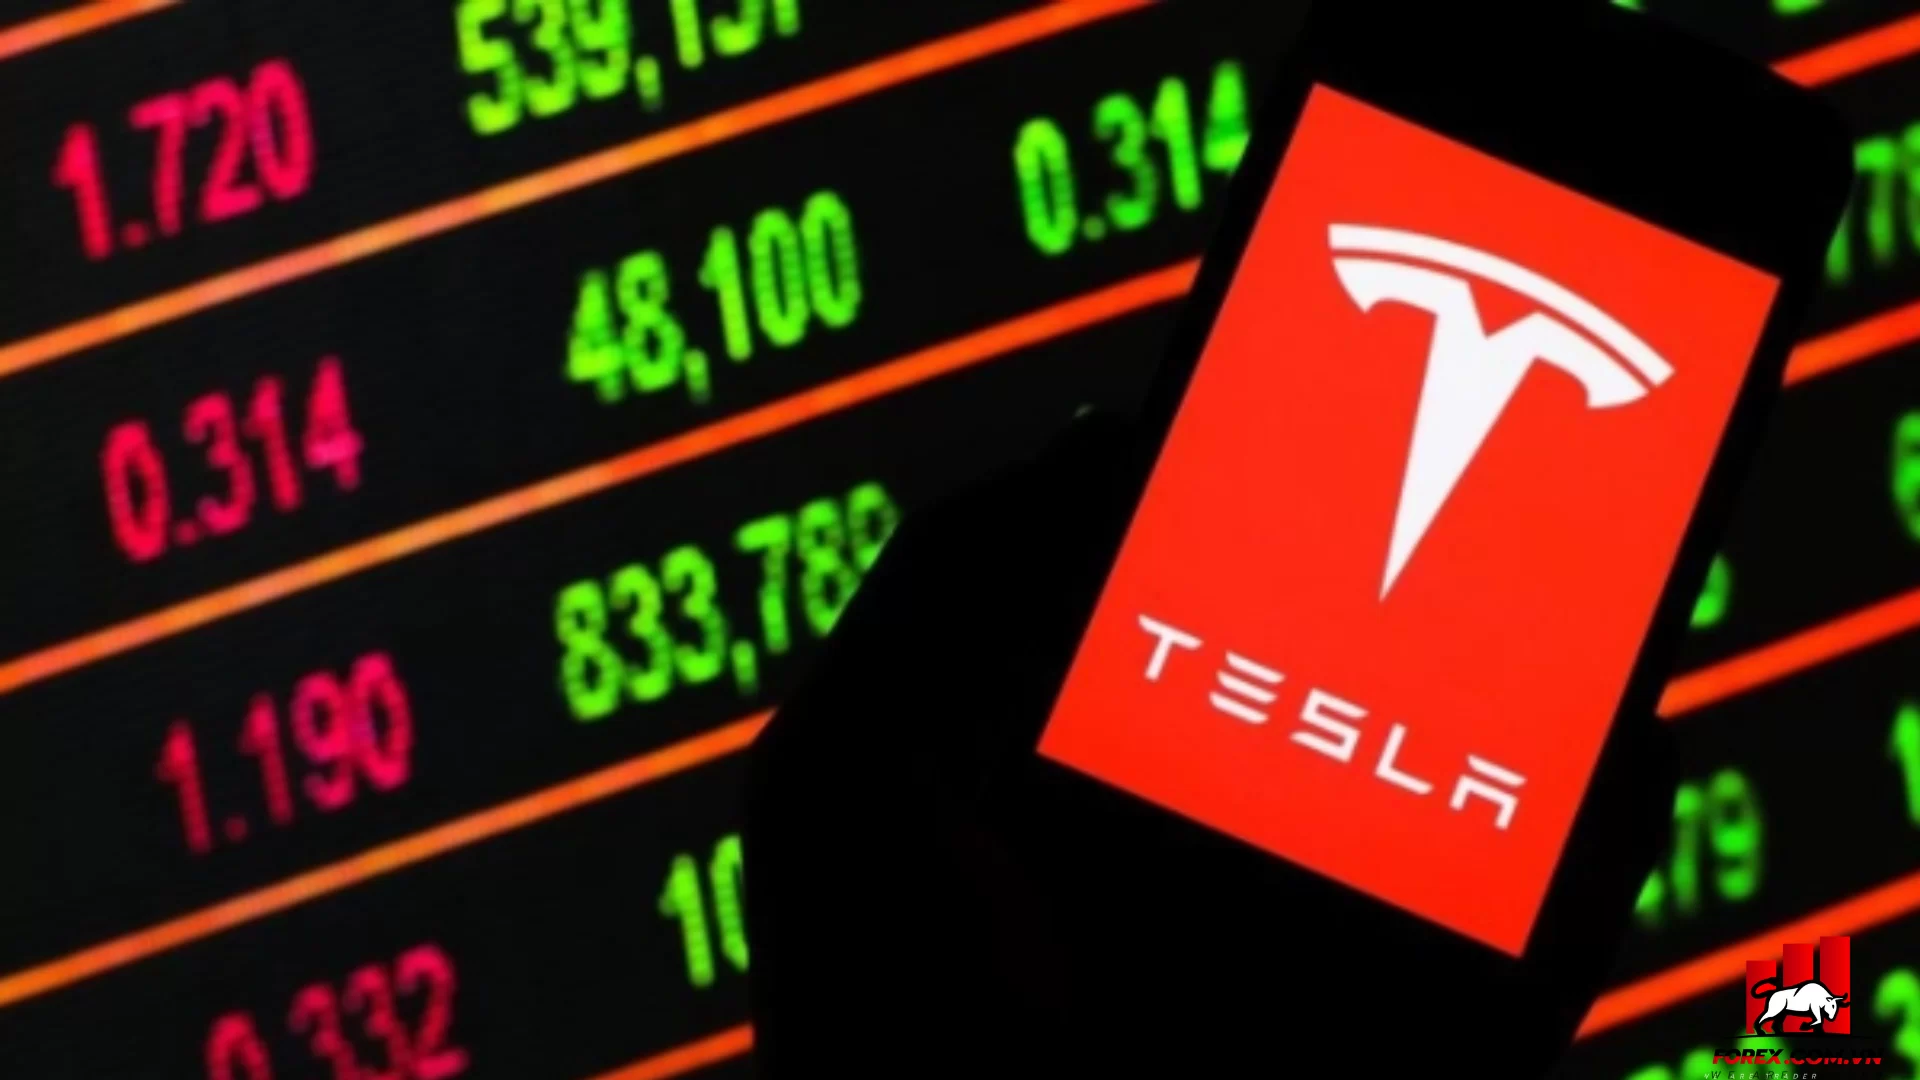 Cổ phiếu Tesla đang tăng mạnh. Có quá muộn để các nhà đầu tư vào cuộc không?